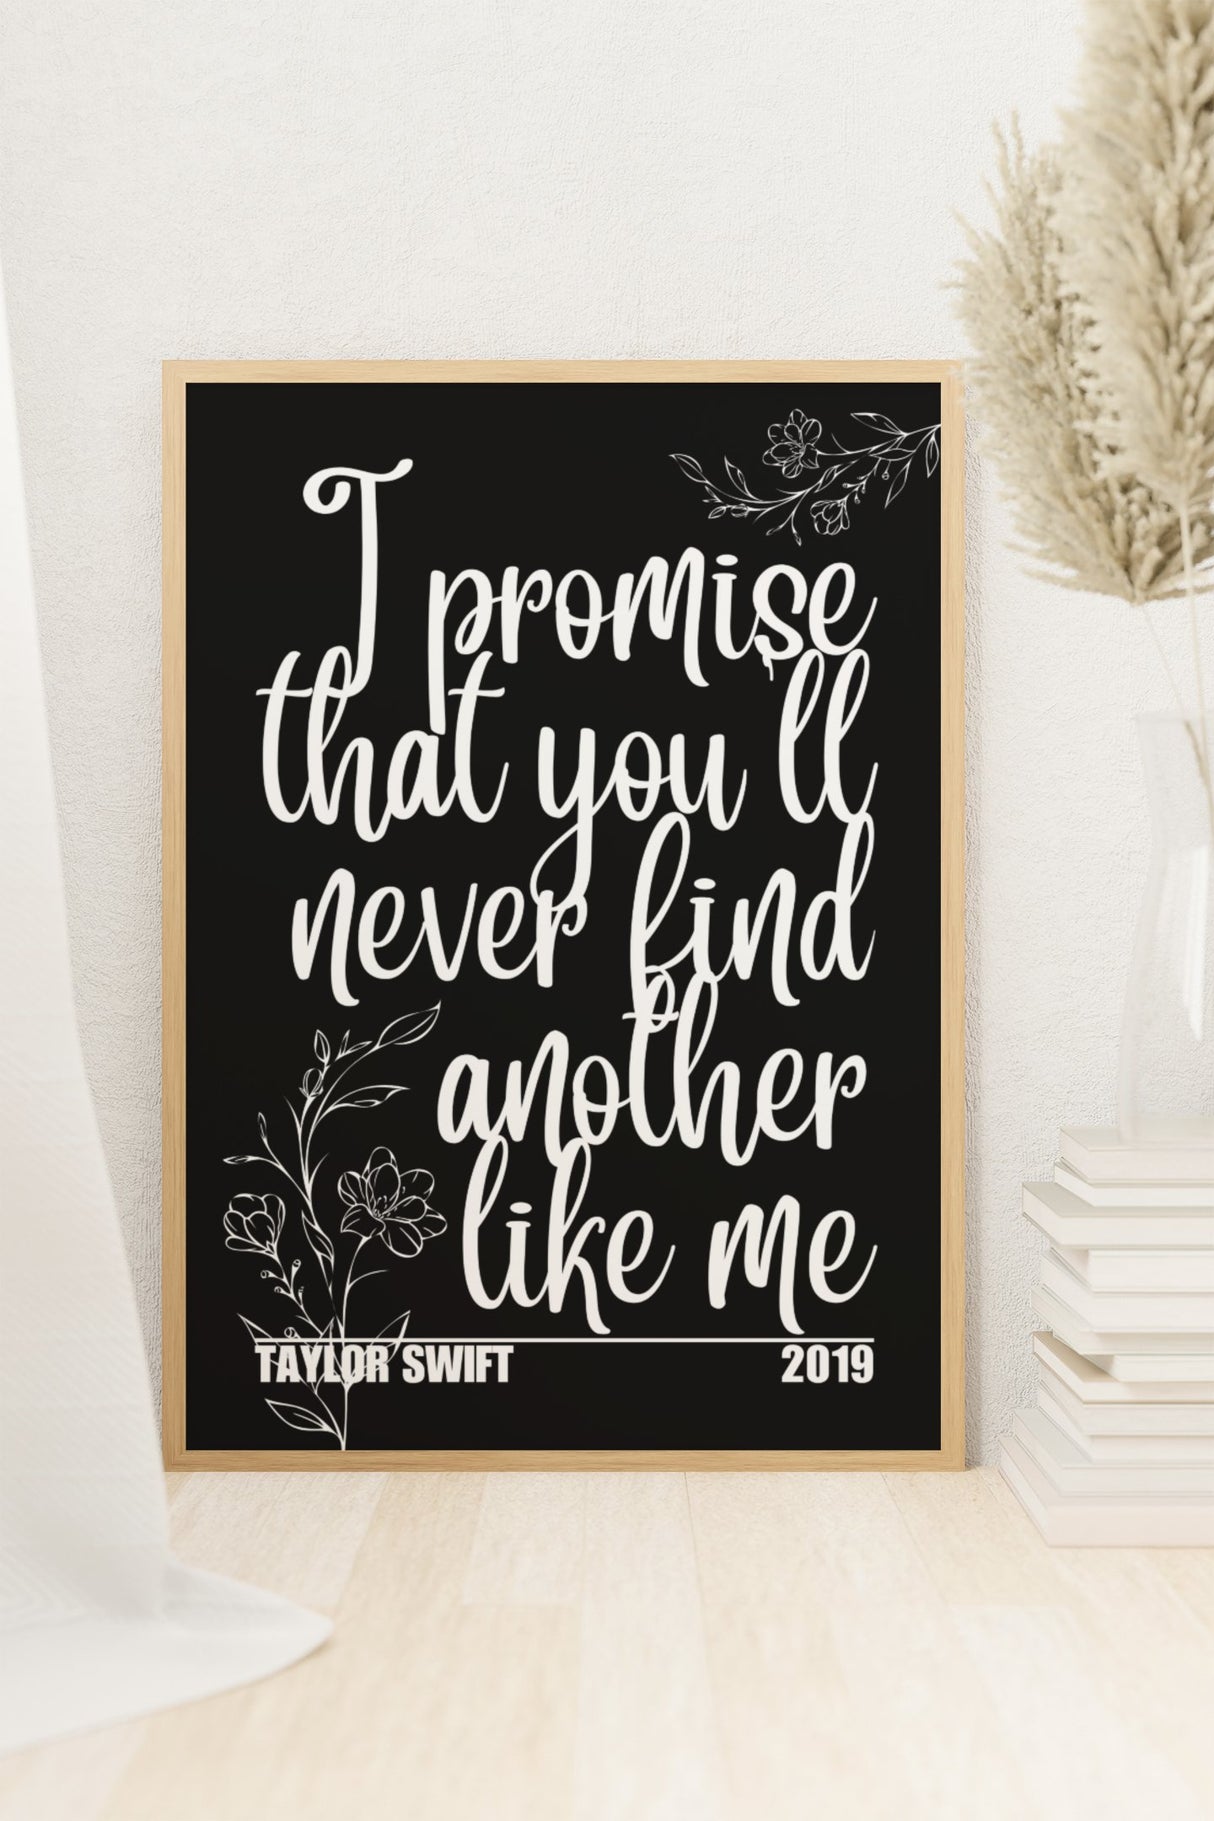 Taylor Swift – ME! Lyrics